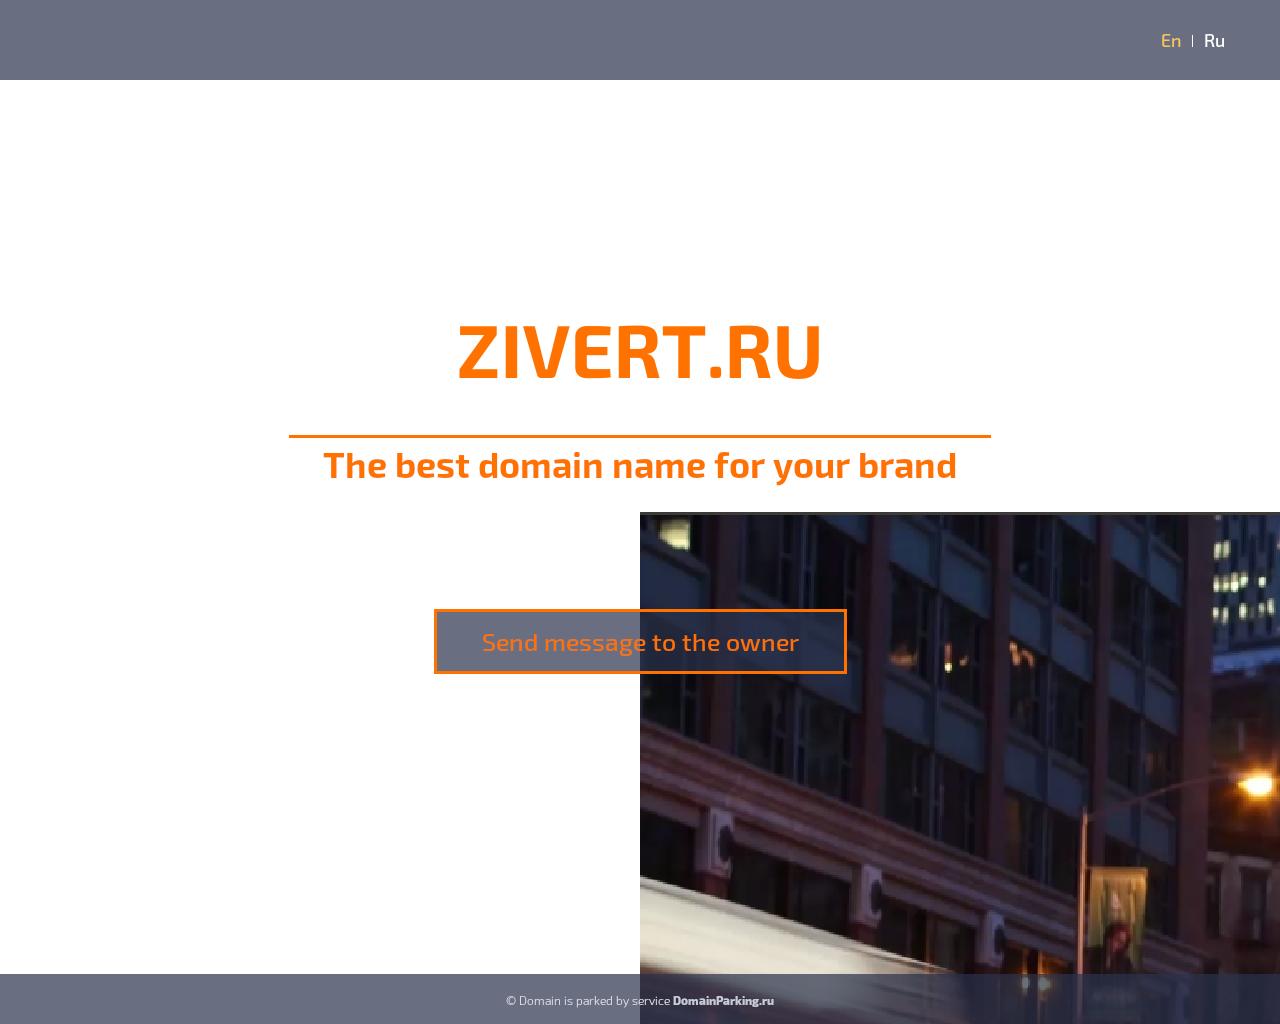 Изображение сайта zivert.ru в разрешении 1280x1024